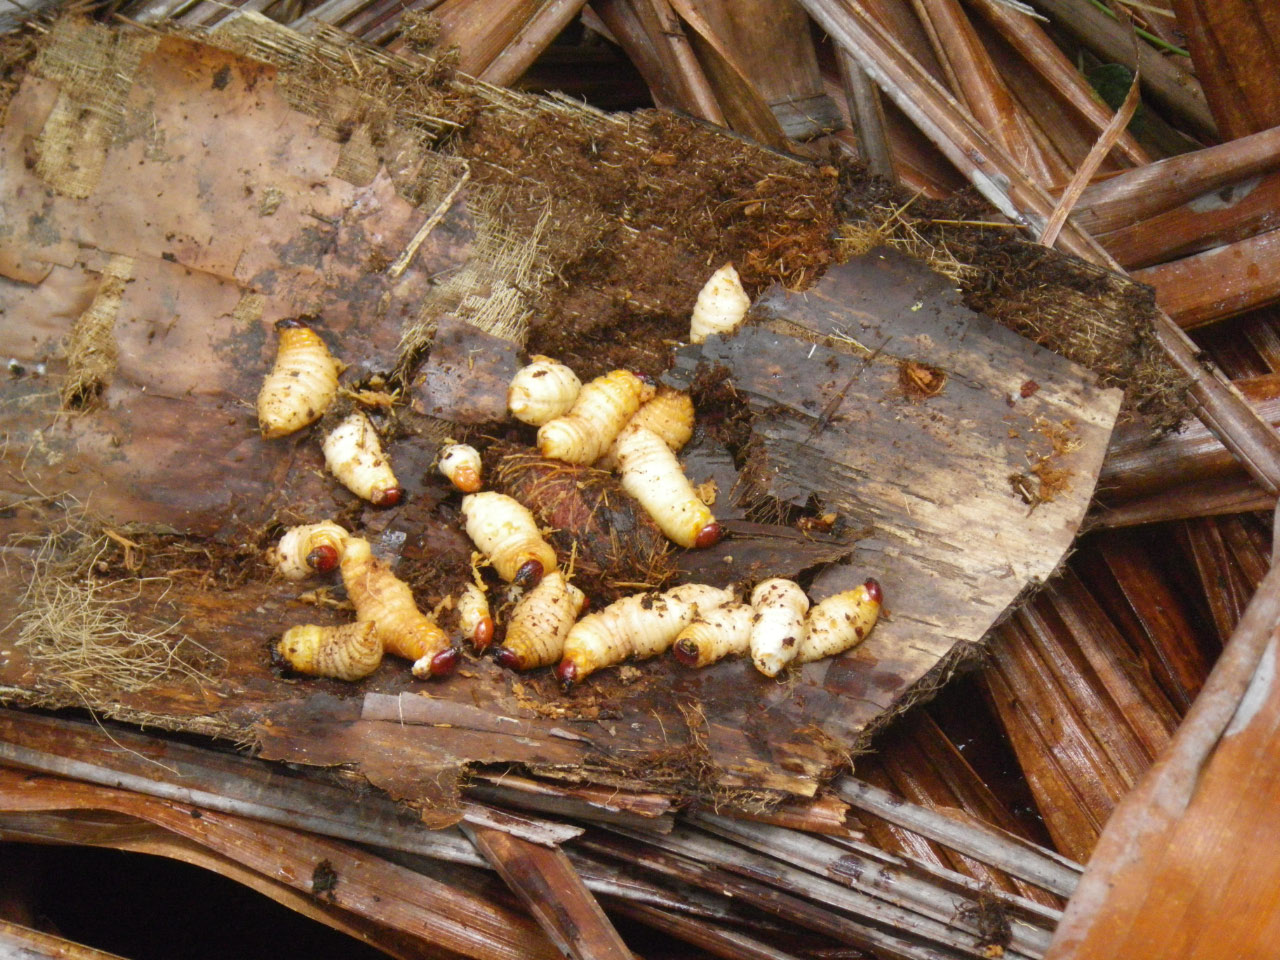 Les larves de capricorne se ramassent par centaines dans le cœur des sagoutiers abattus quelques semaines avant